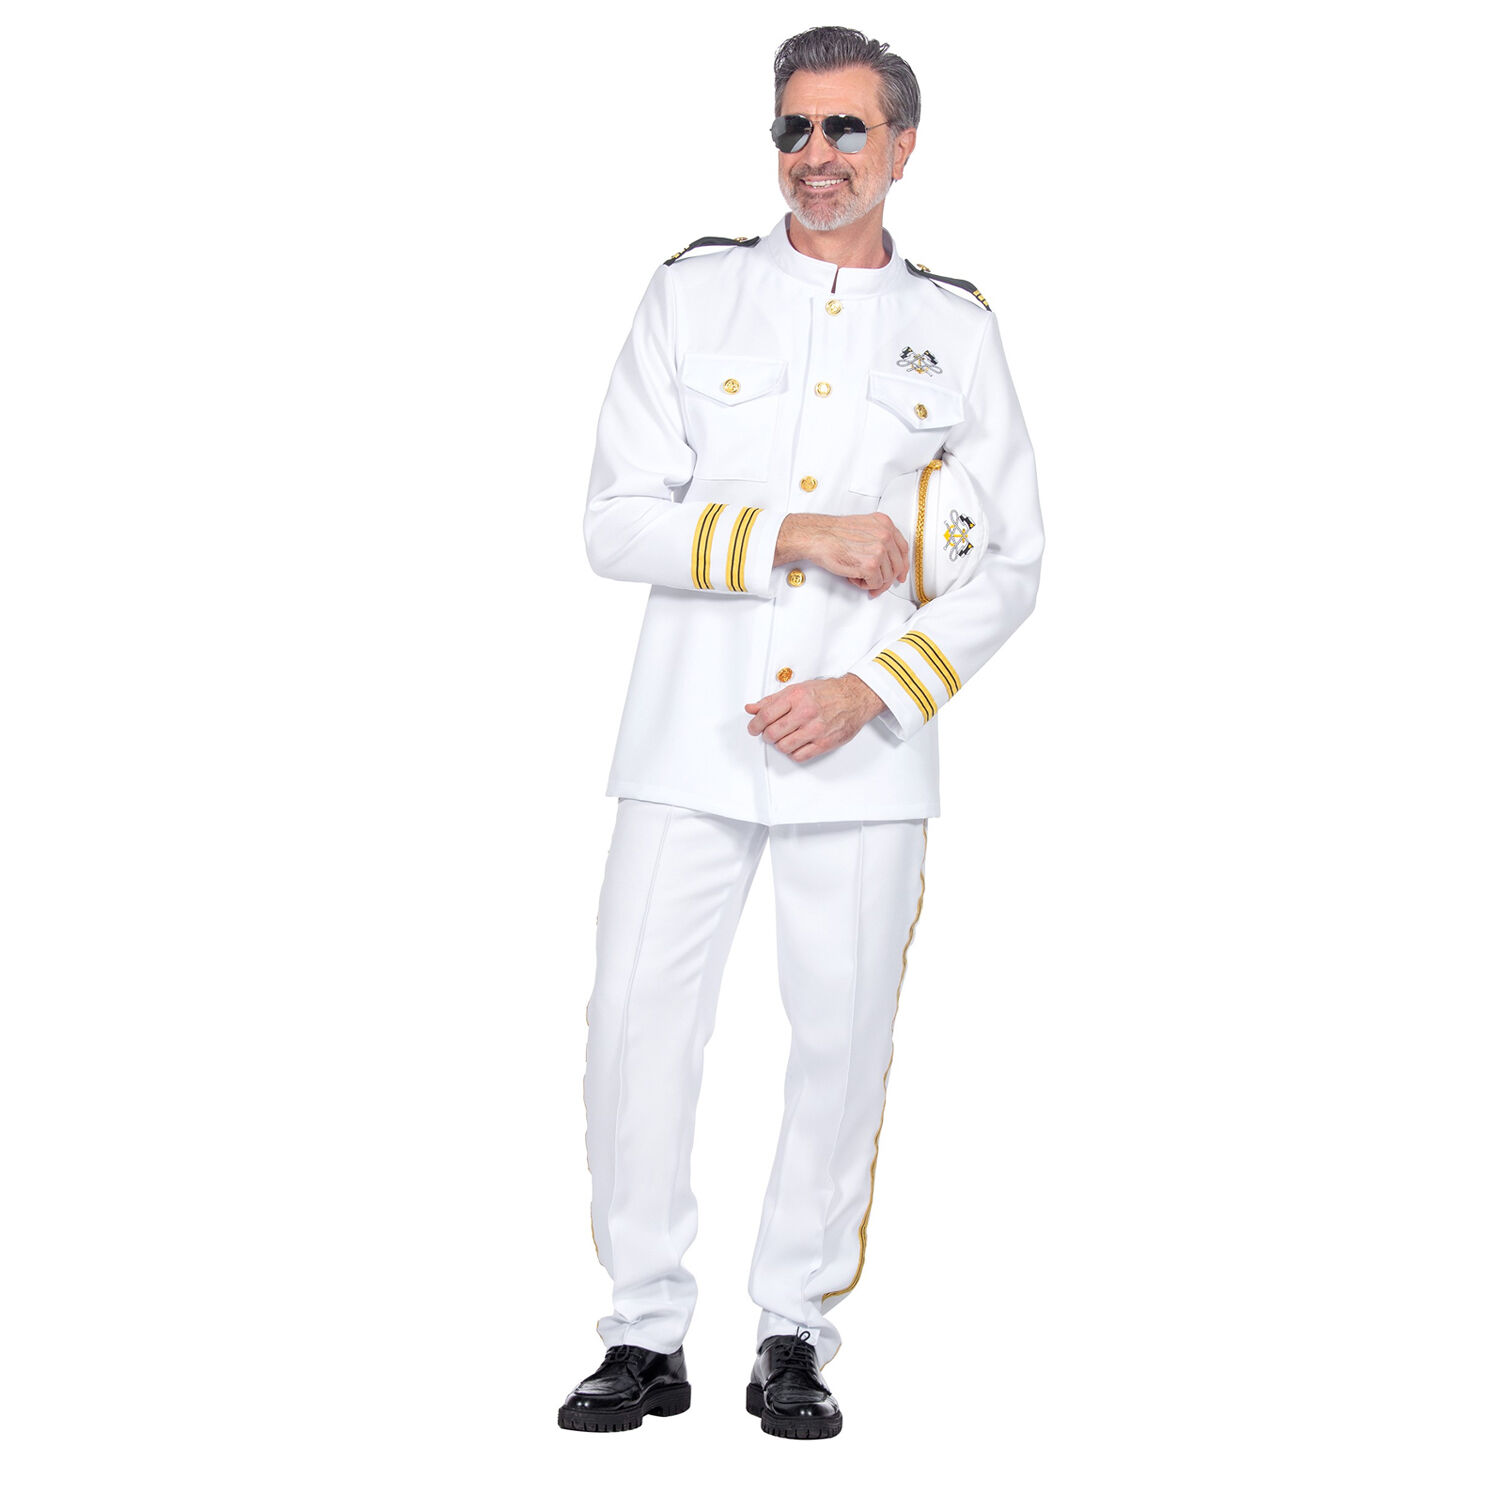 NEU Herren-Kostm Navy-Offizier oder Kapitn, Hose und Oberteil, wei, Gr. S Bild 2